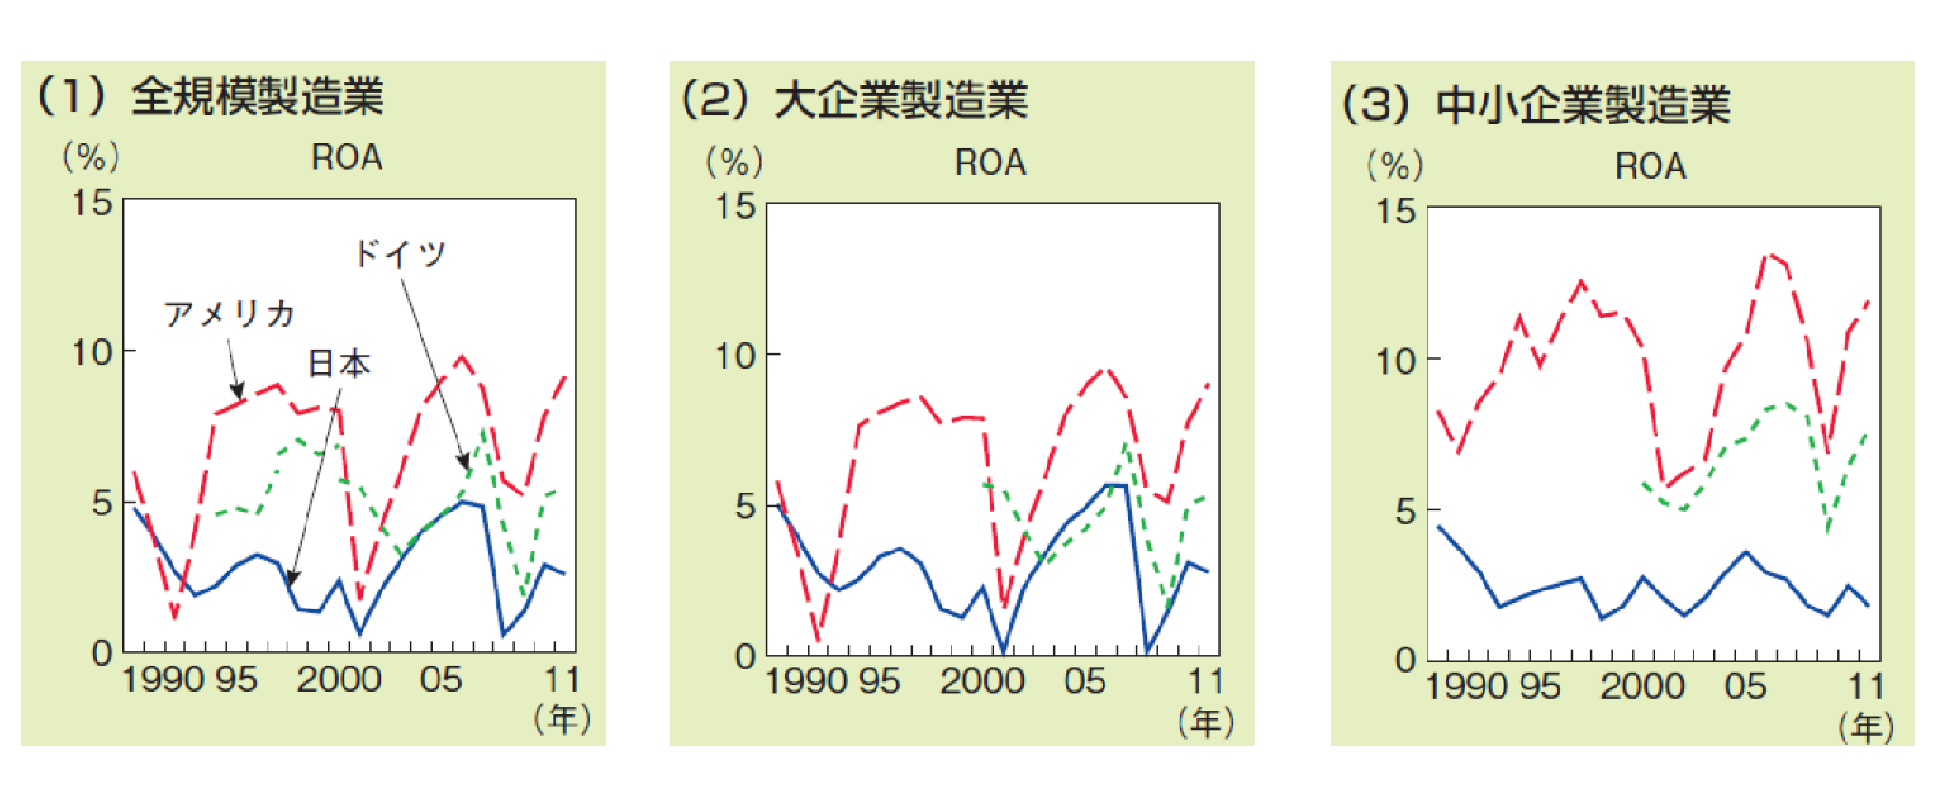 日本の中小企業のROA（総資本利益率）